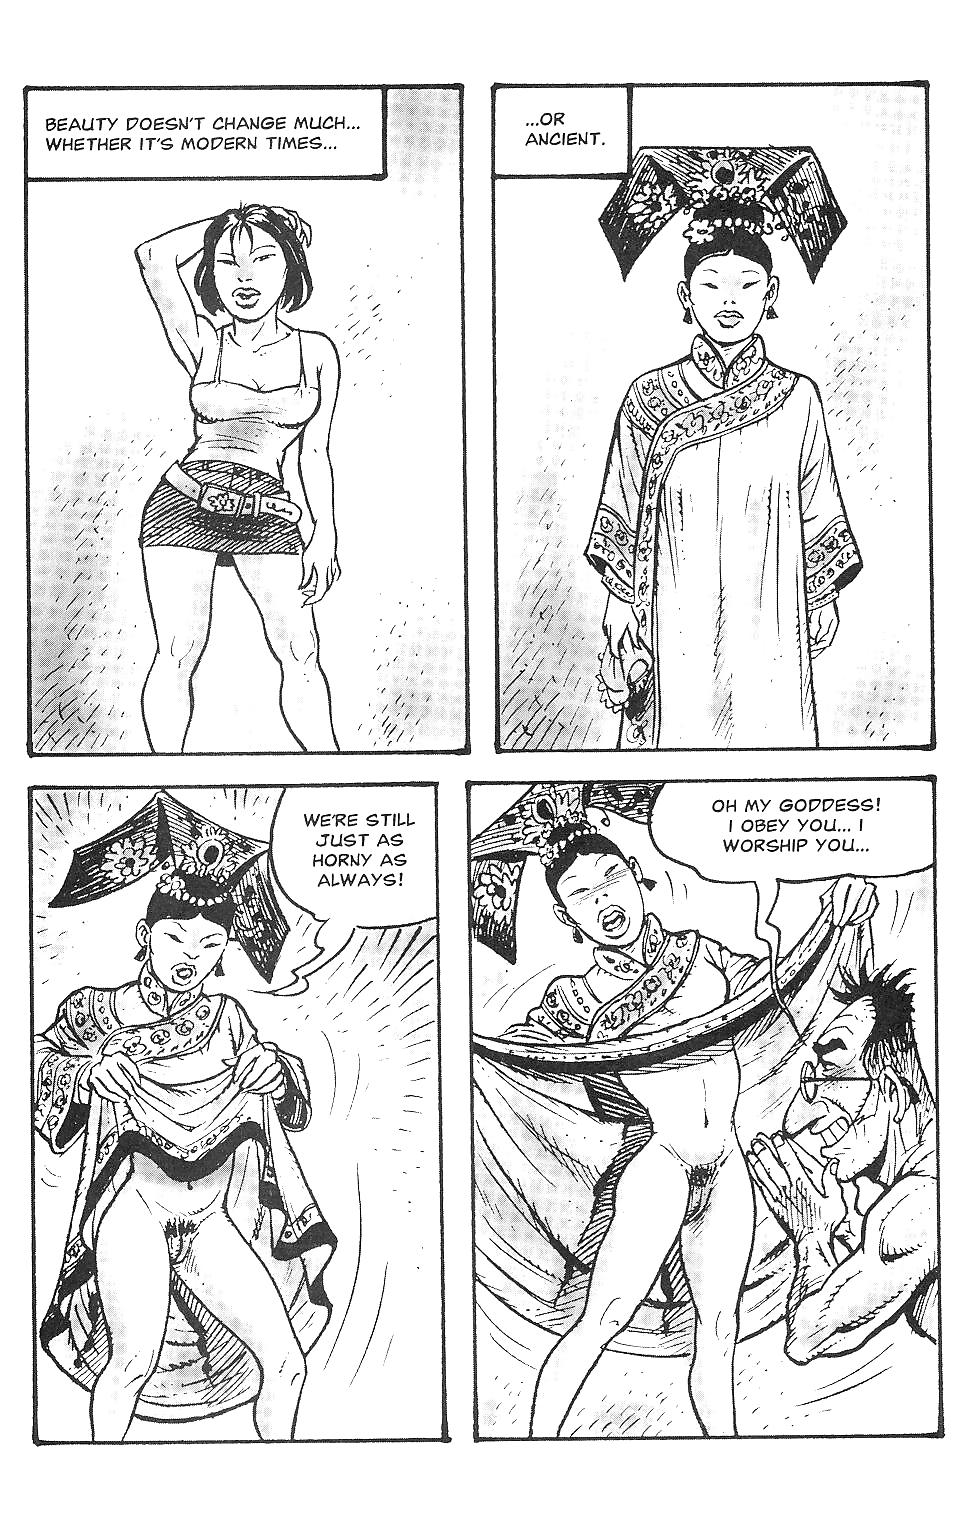 Orientierungen Sexuelle Belästigung Comics #17273382